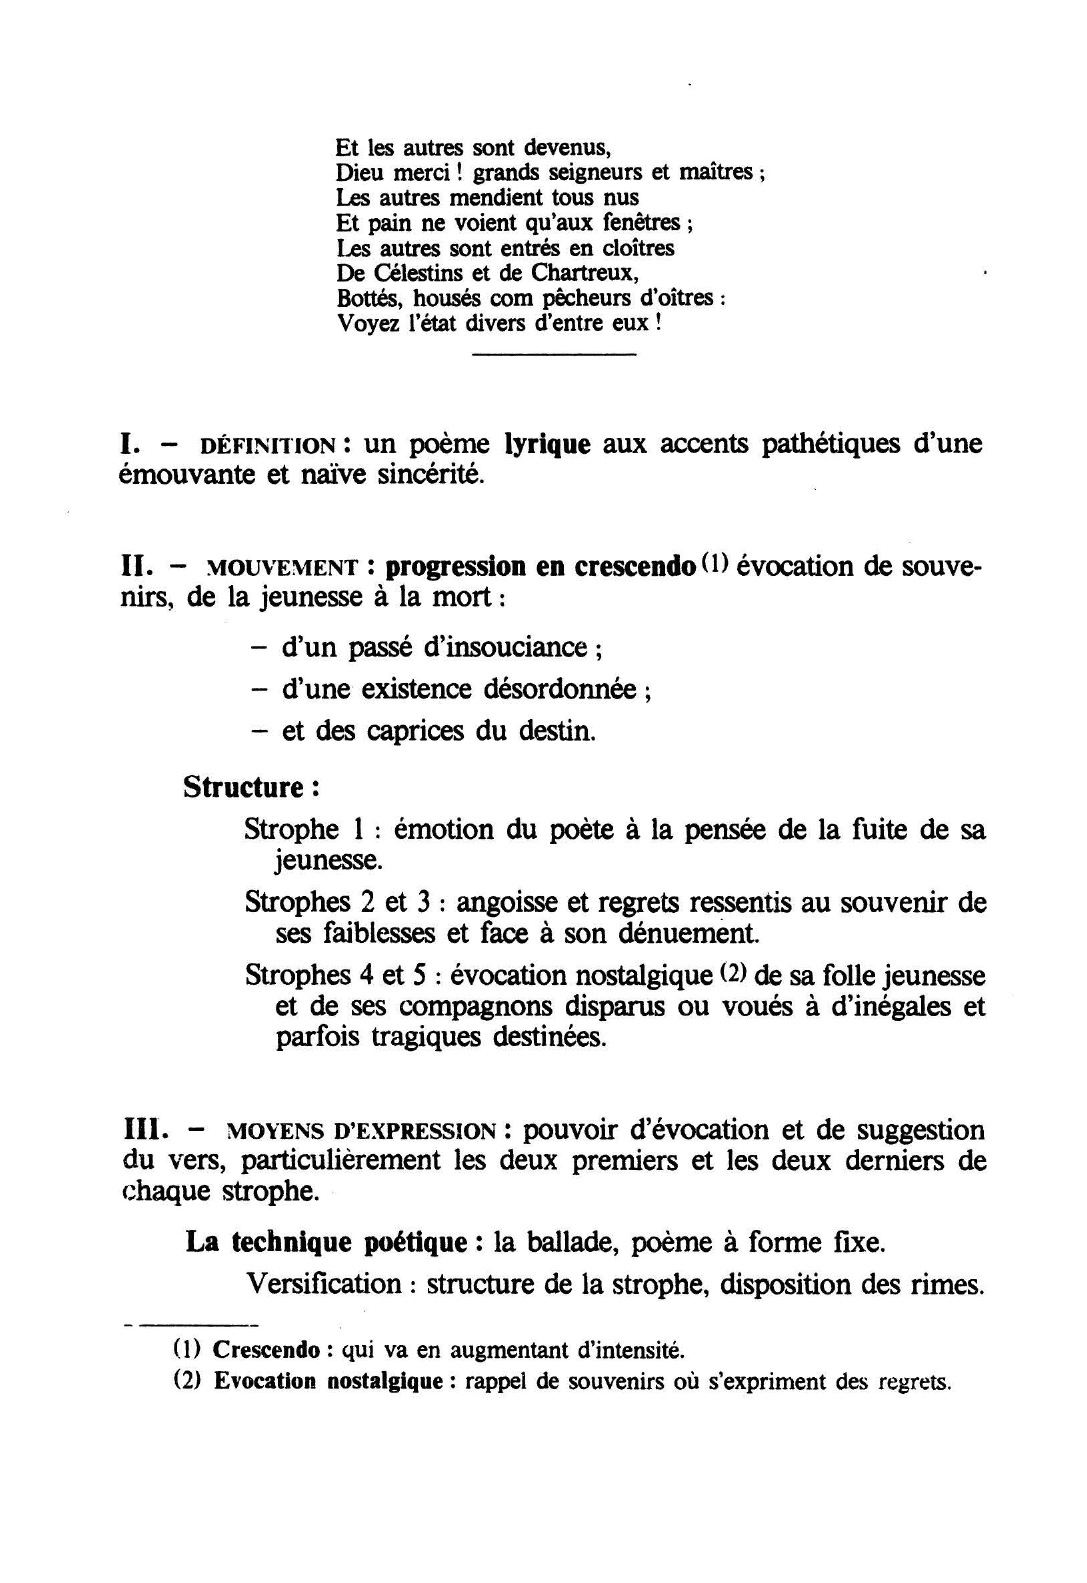 Prévisualisation du document VILLON : REGRETS - JE PLAINS LE TEMPS DE MA JEUNESSE (strophes 1 à 5)